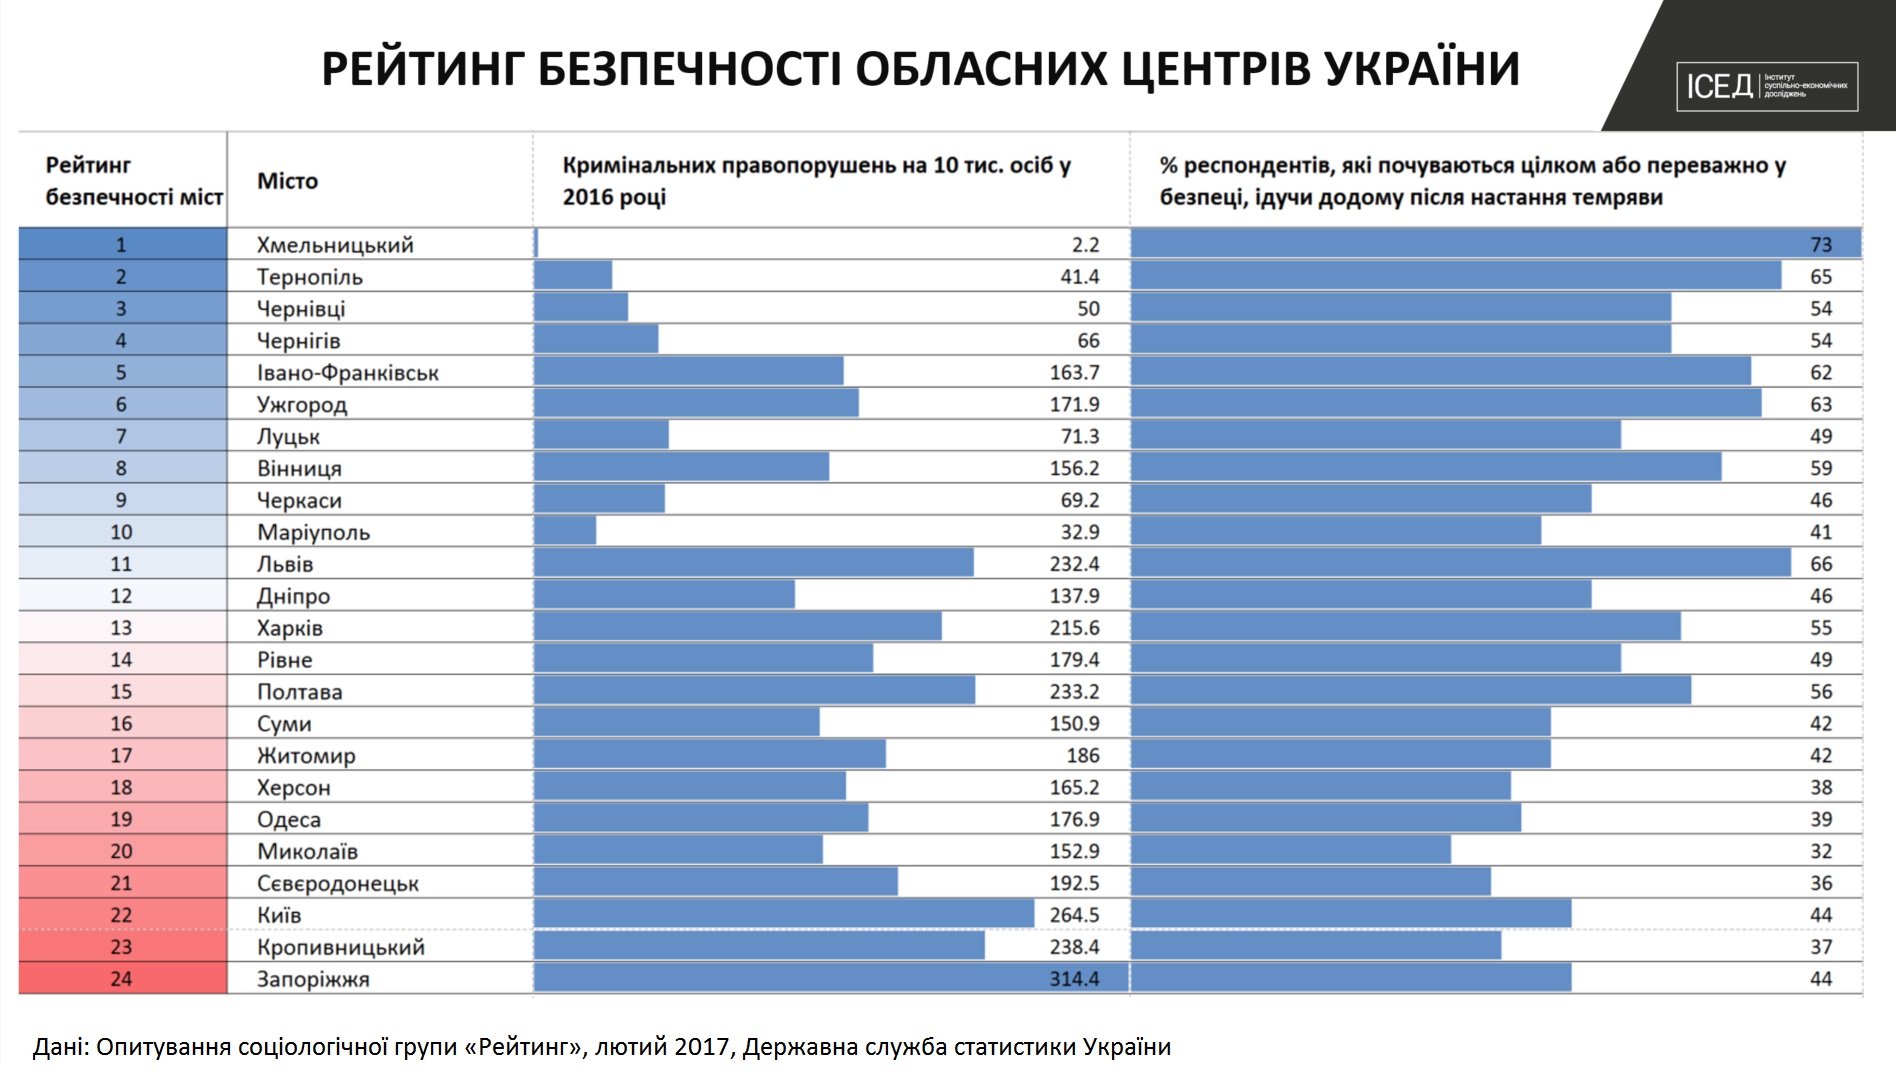 Найбезпечніший облцентр України – Хмельницький, найнебезпечніший – Запоріжжя. Рейтинг міст